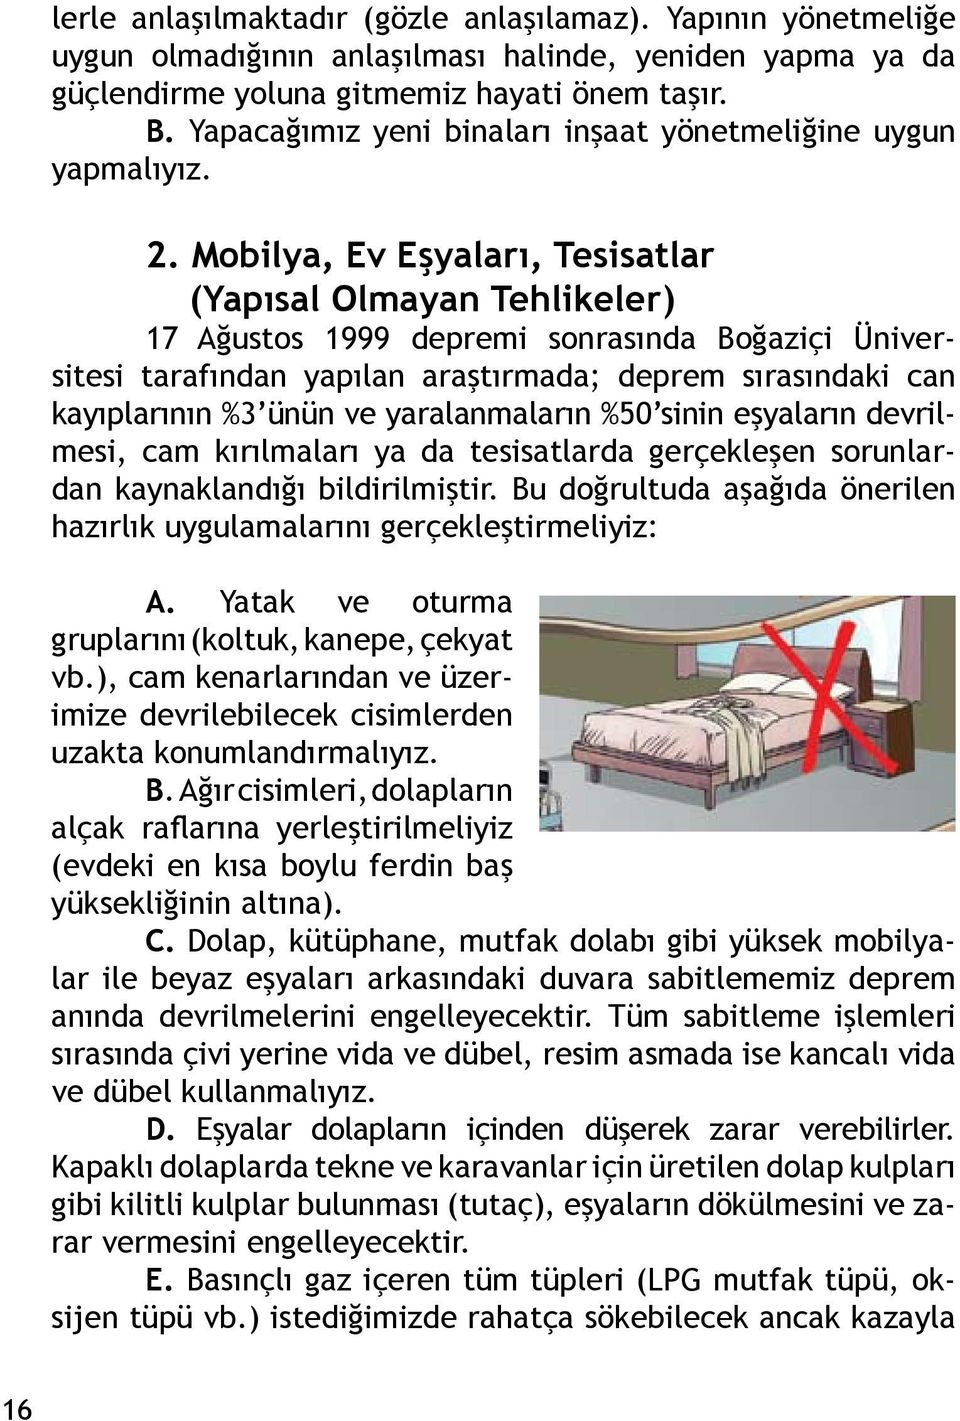 Mobilya, Ev Eşyaları, Tesisatlar (Yapısal Olmayan Tehlikeler) 17 Ağustos 1999 depremi sonrasında Boğaziçi Üniversitesi tarafından yapılan araştırmada; deprem sırasındaki can kayıplarının %3 ünün ve